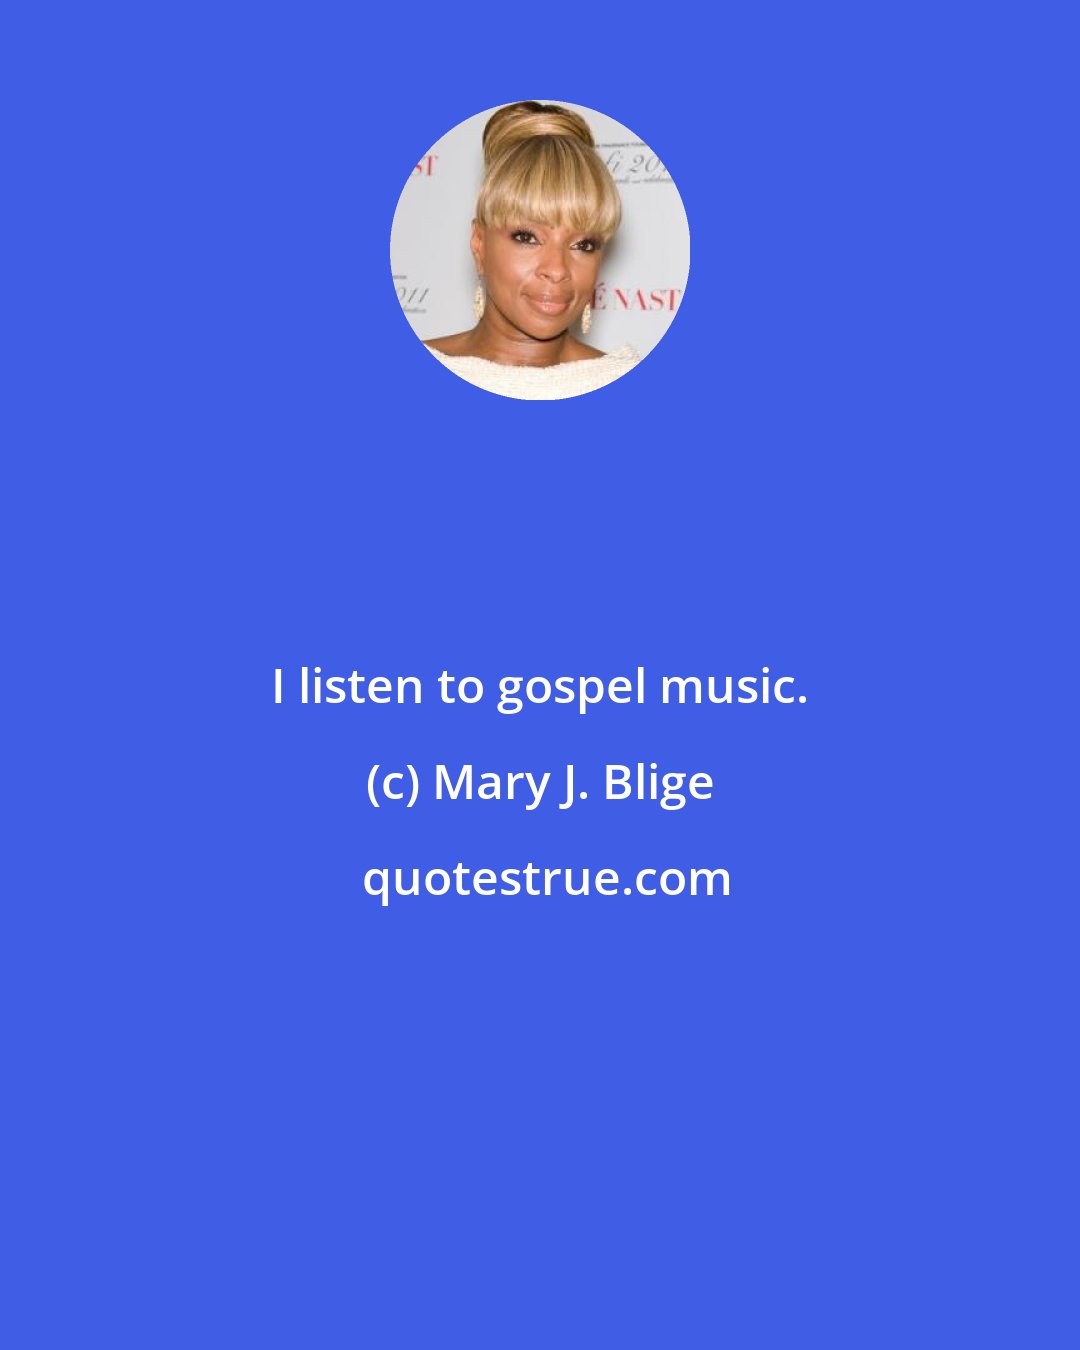 Mary J. Blige: I listen to gospel music.